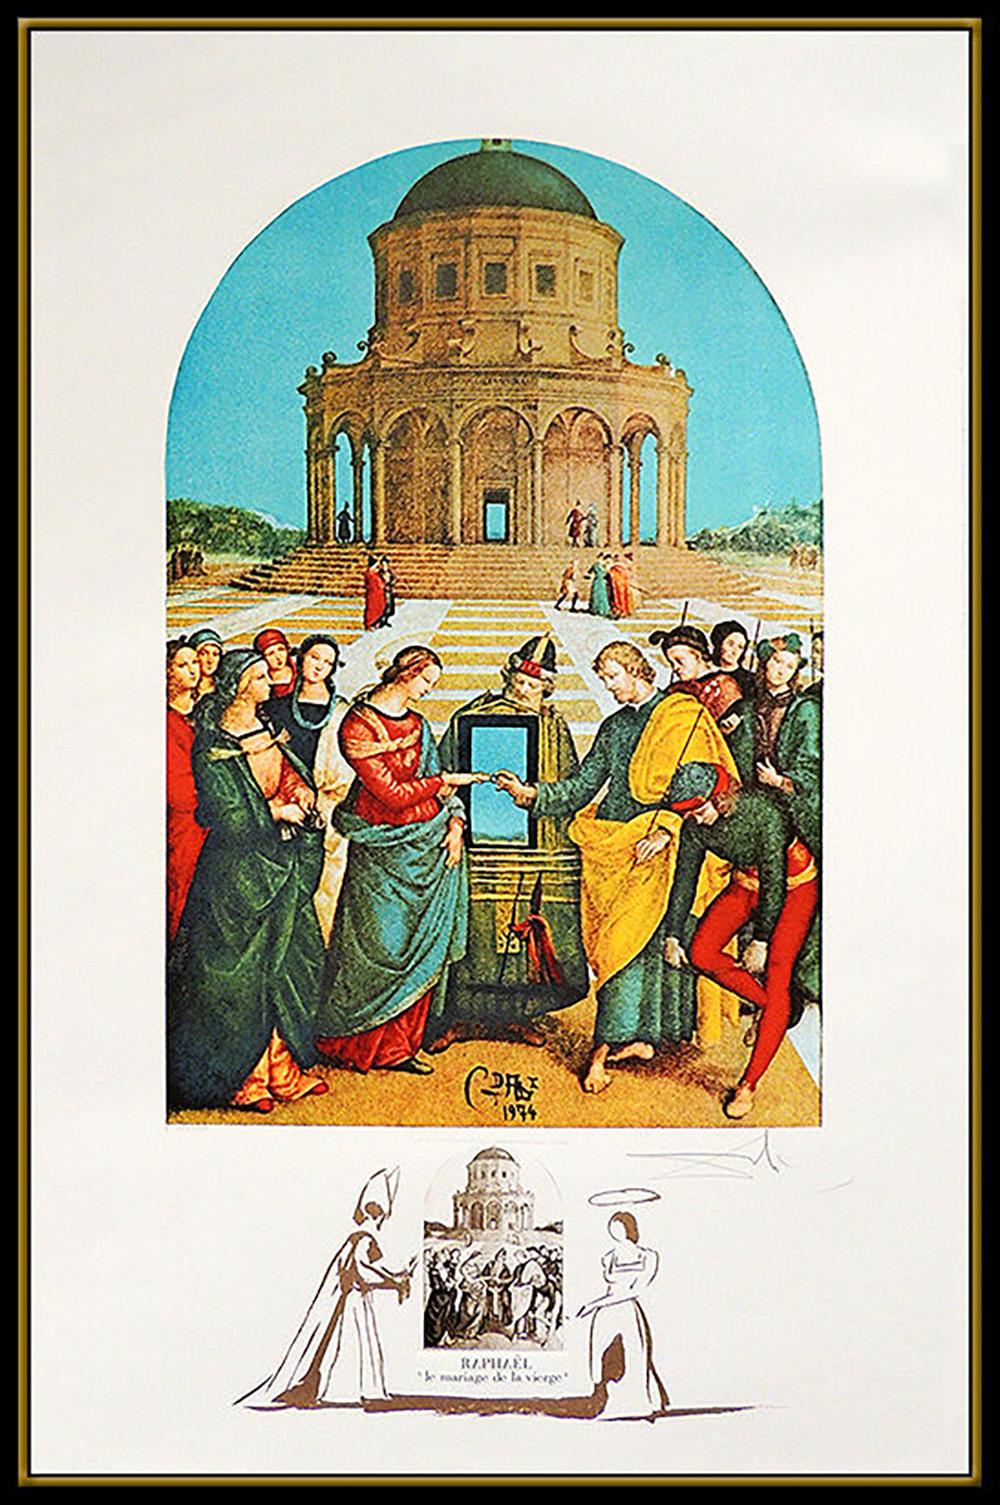 Salvador Dali Hand Signed Original Lithograph Raphael Le Marriage de Vierse Art - Surrealist Print by Salvador Dalí